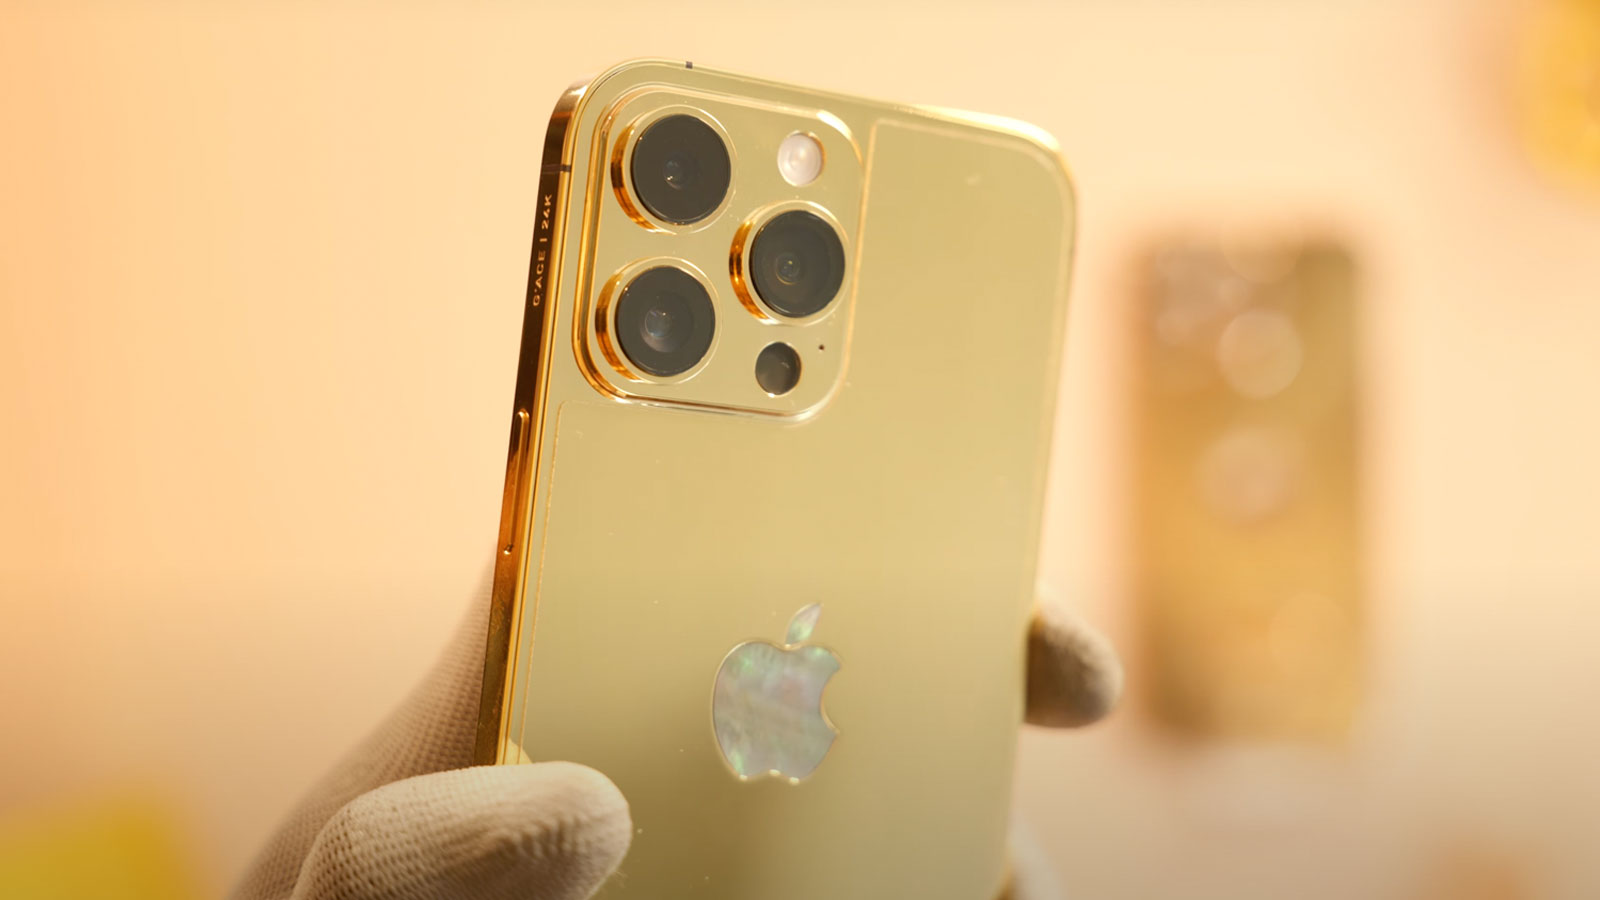 iPhone 14 Pro Max mạ vàng, đính kim cương: Làm cho iPhone 14 Pro Max của bạn thêm phần sang trọng và đẳng cấp với phiên bản mạ vàng đính kim cương. Không chỉ vừa sở hữu tính năng vượt trội, chiếc điện thoại của bạn còn khiến cho người đối diện phải trầm trồ.